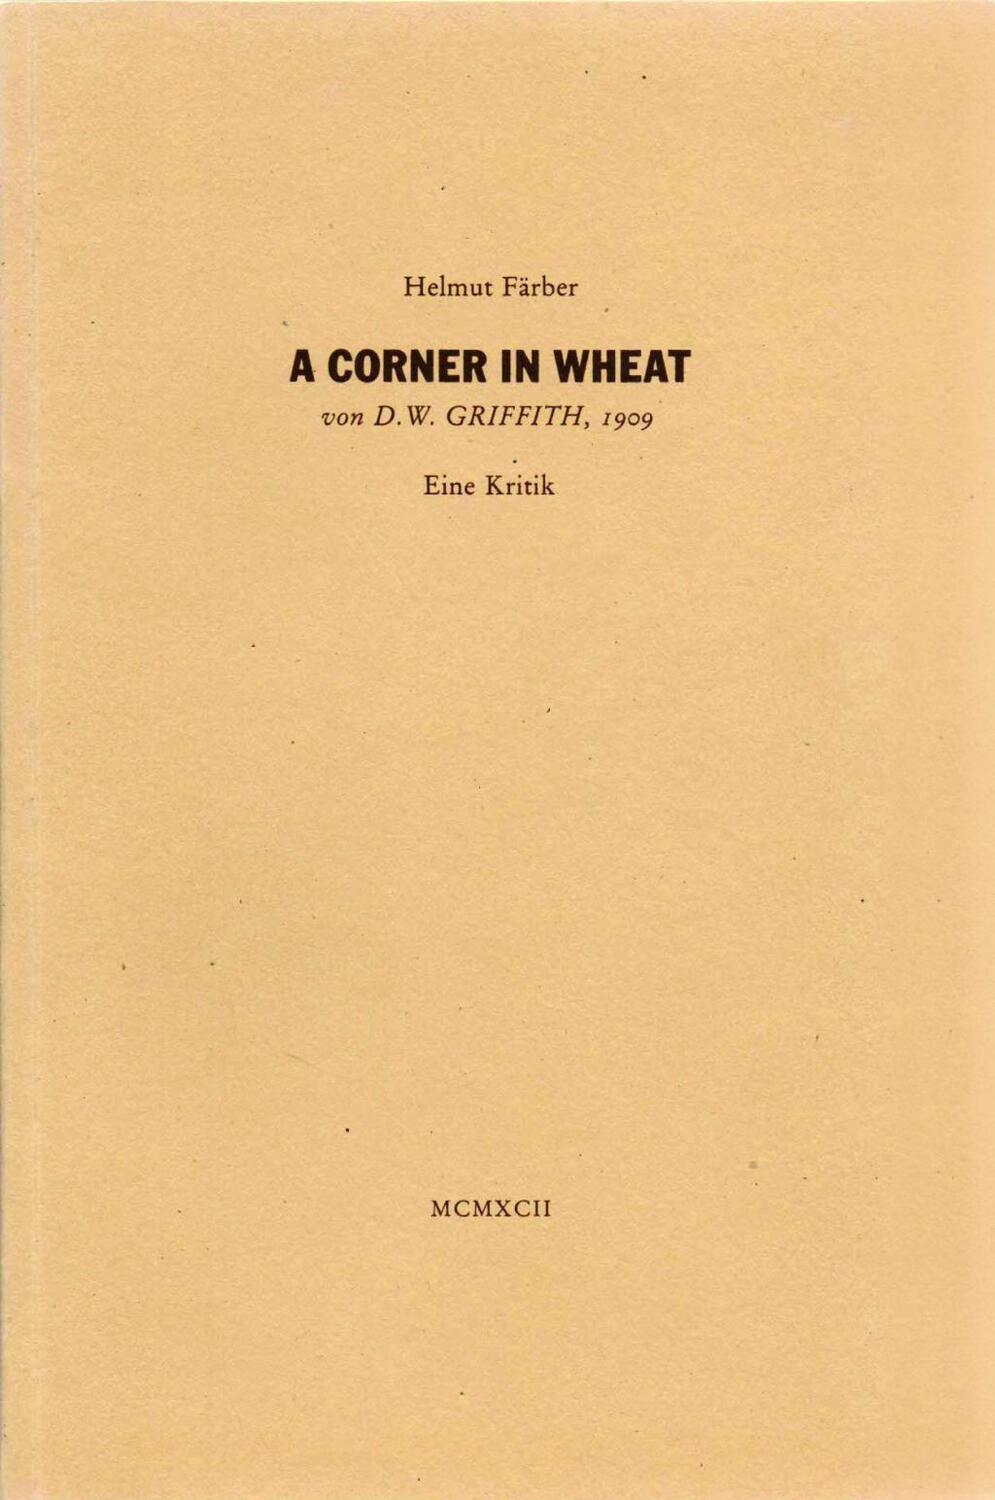 Cover: 9783980017824 | A Corner in Wheat von D. W. Griffith, 1909 | Eine Kritik | Färber